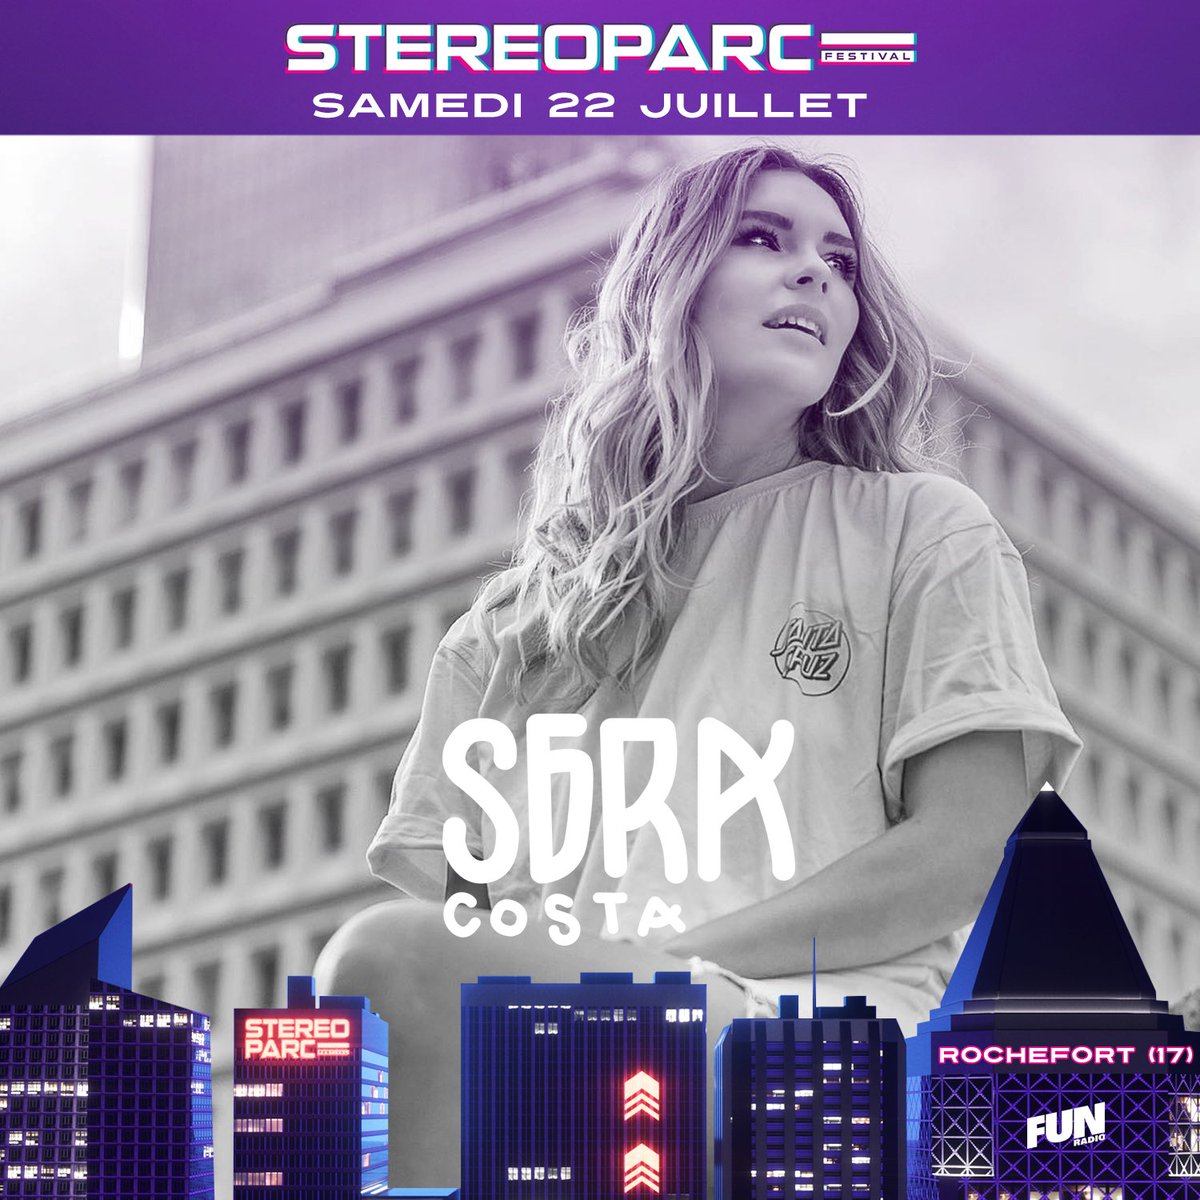 Le line-up de Stereoparc se rallonge ! 🤟 On vous balance @Apashe_Music, @watermatmusic et Sara Costa, de quoi vous faire vibrer pendant 2 jours 💥🕺 Un week-end qui s’annonce inoubliable 🤩 Infos et réservation sur stereoparc.com